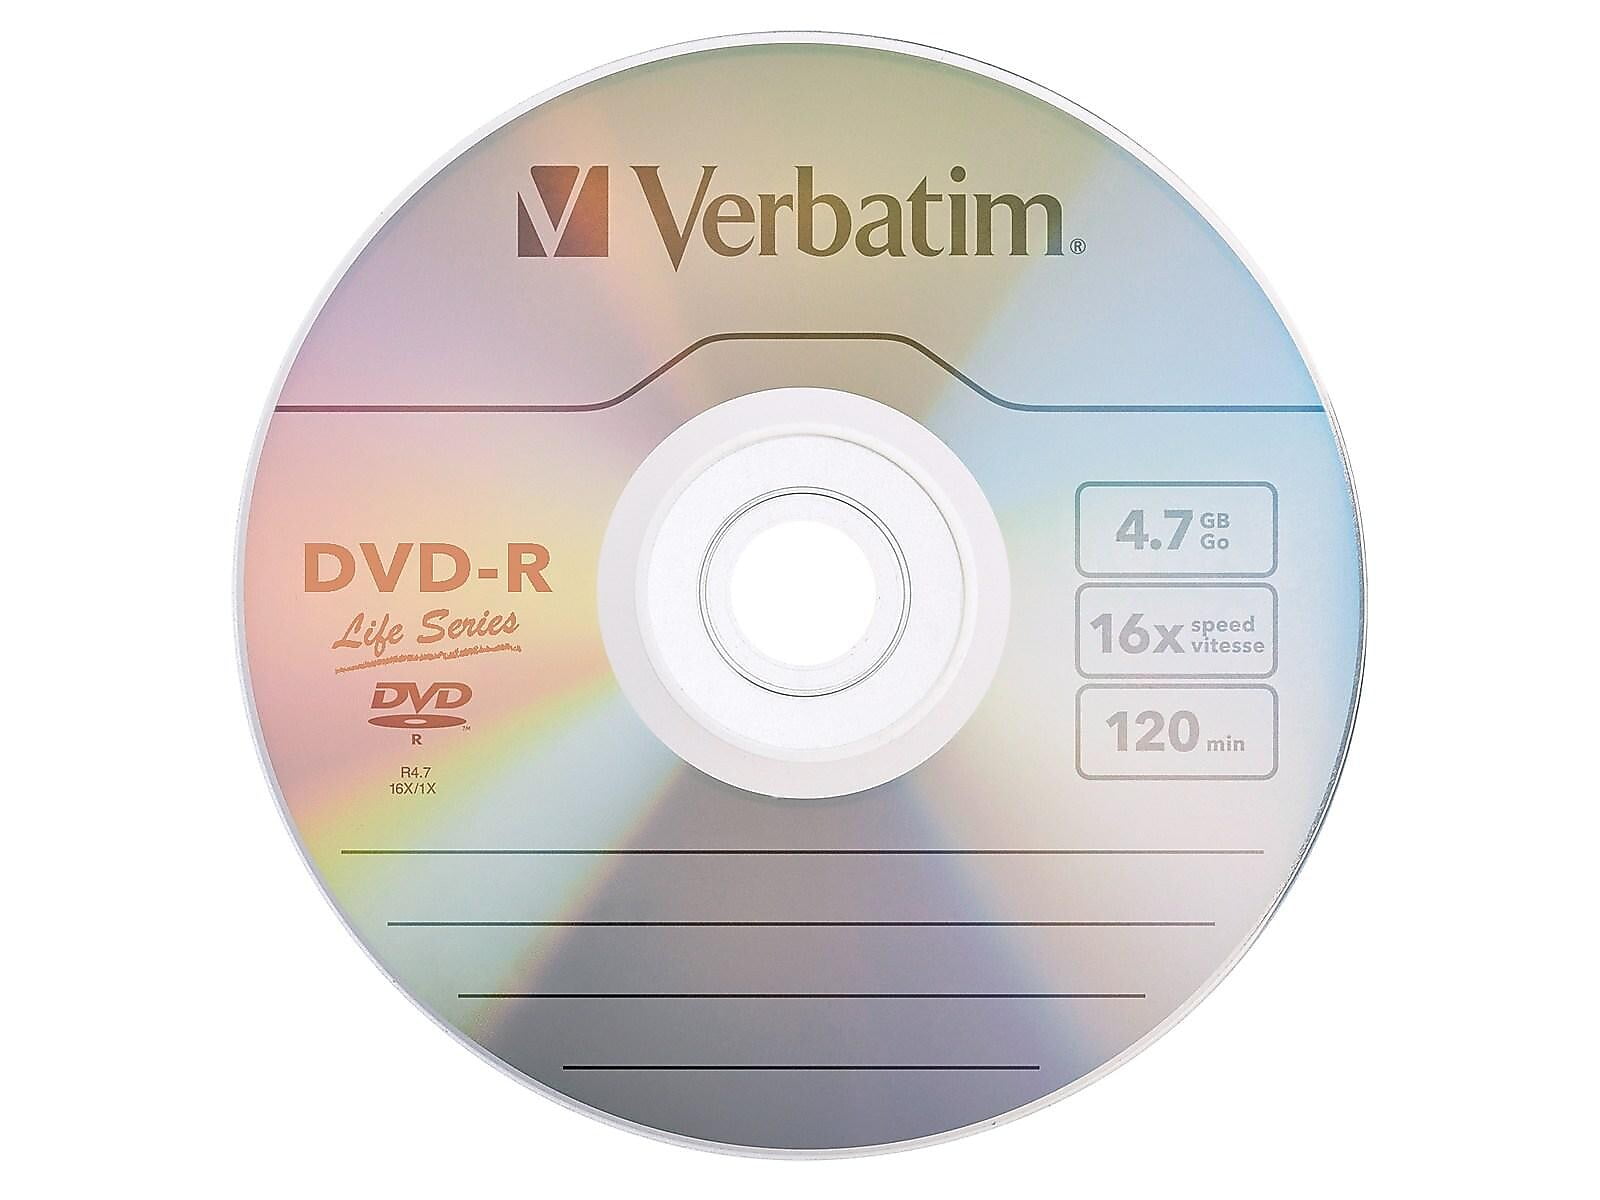 Sony DVD-R 10DMR47B 4.7GB 10 Unités Multicolore